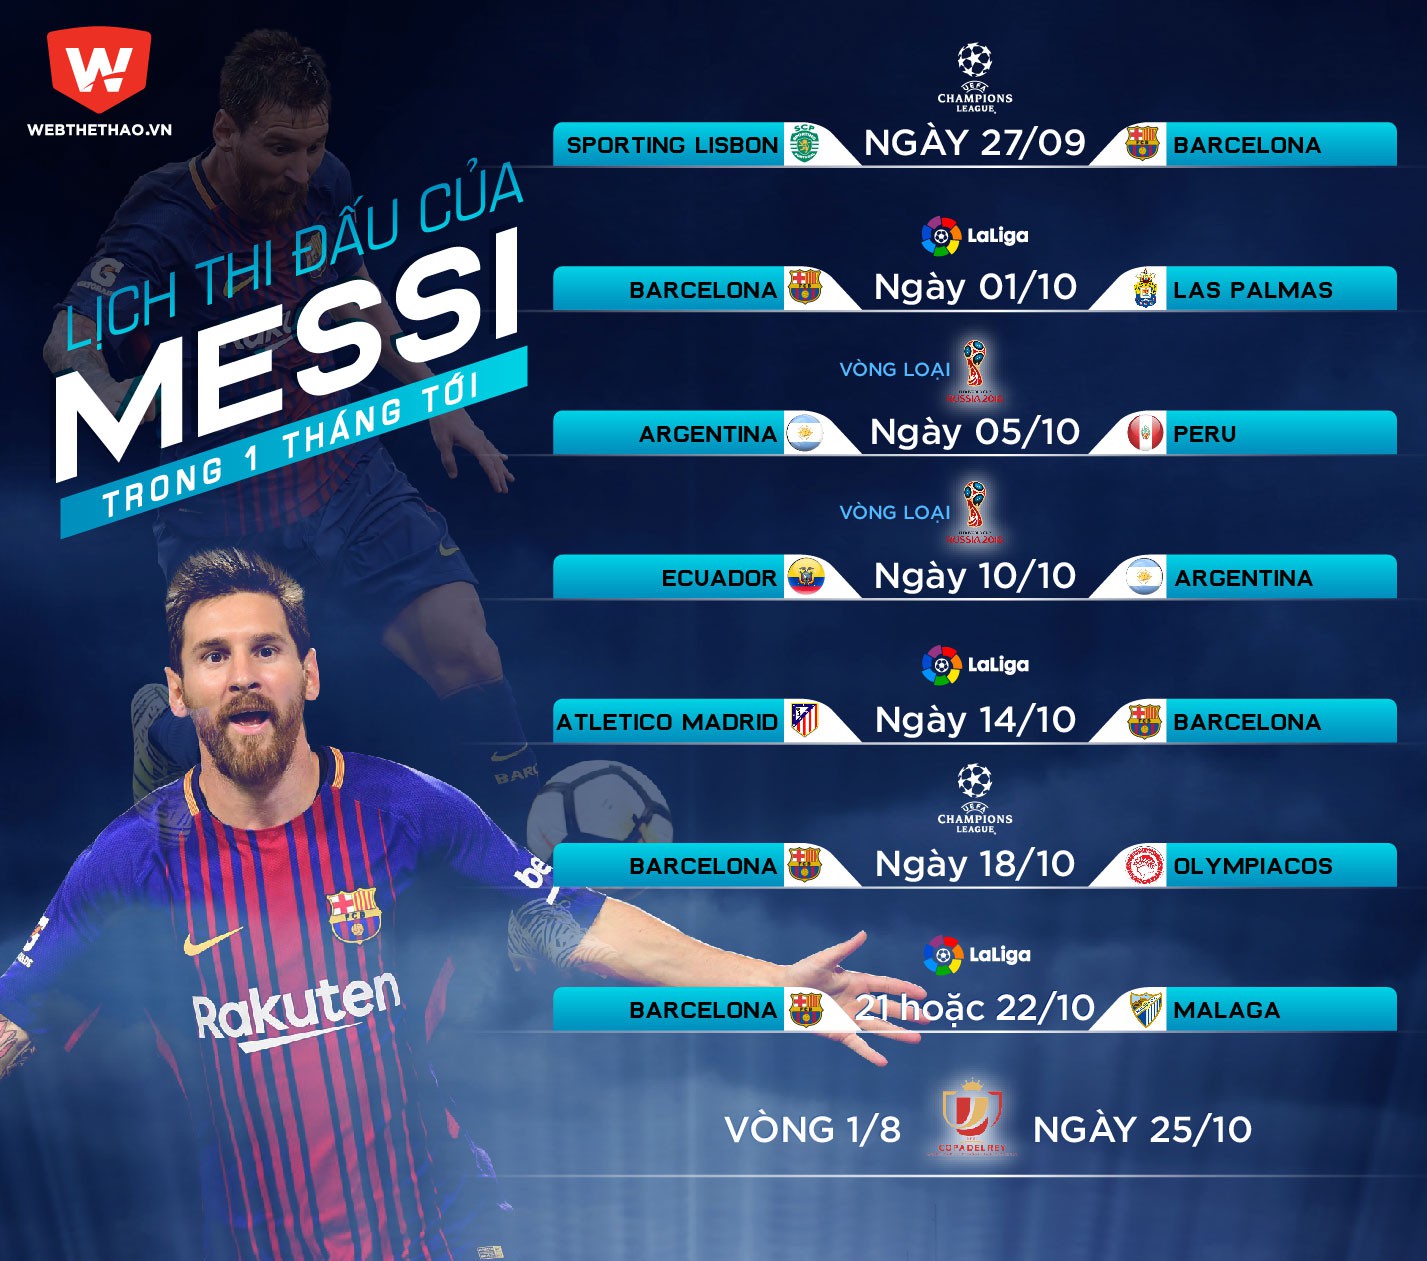 Lịch trình cày ải của Messi trong vòng 1 tháng tới